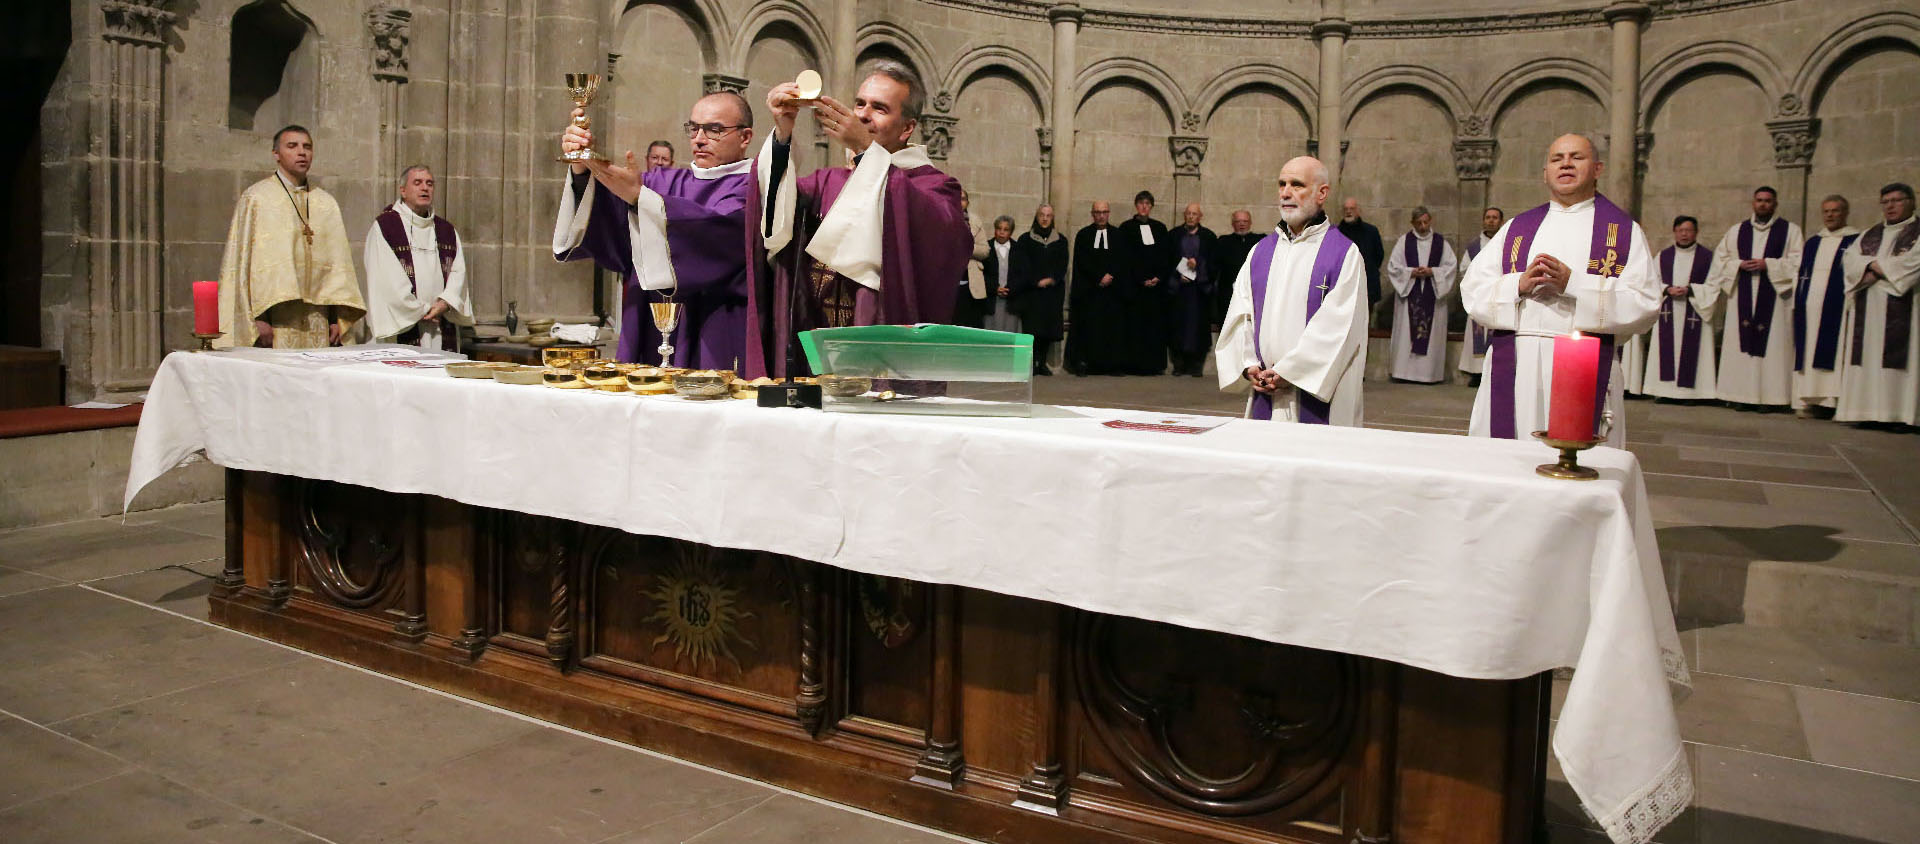 L'abbé pascal Desthieux préside l'eucharistie dans la cathédrale de Genève | © Bernard Hallet